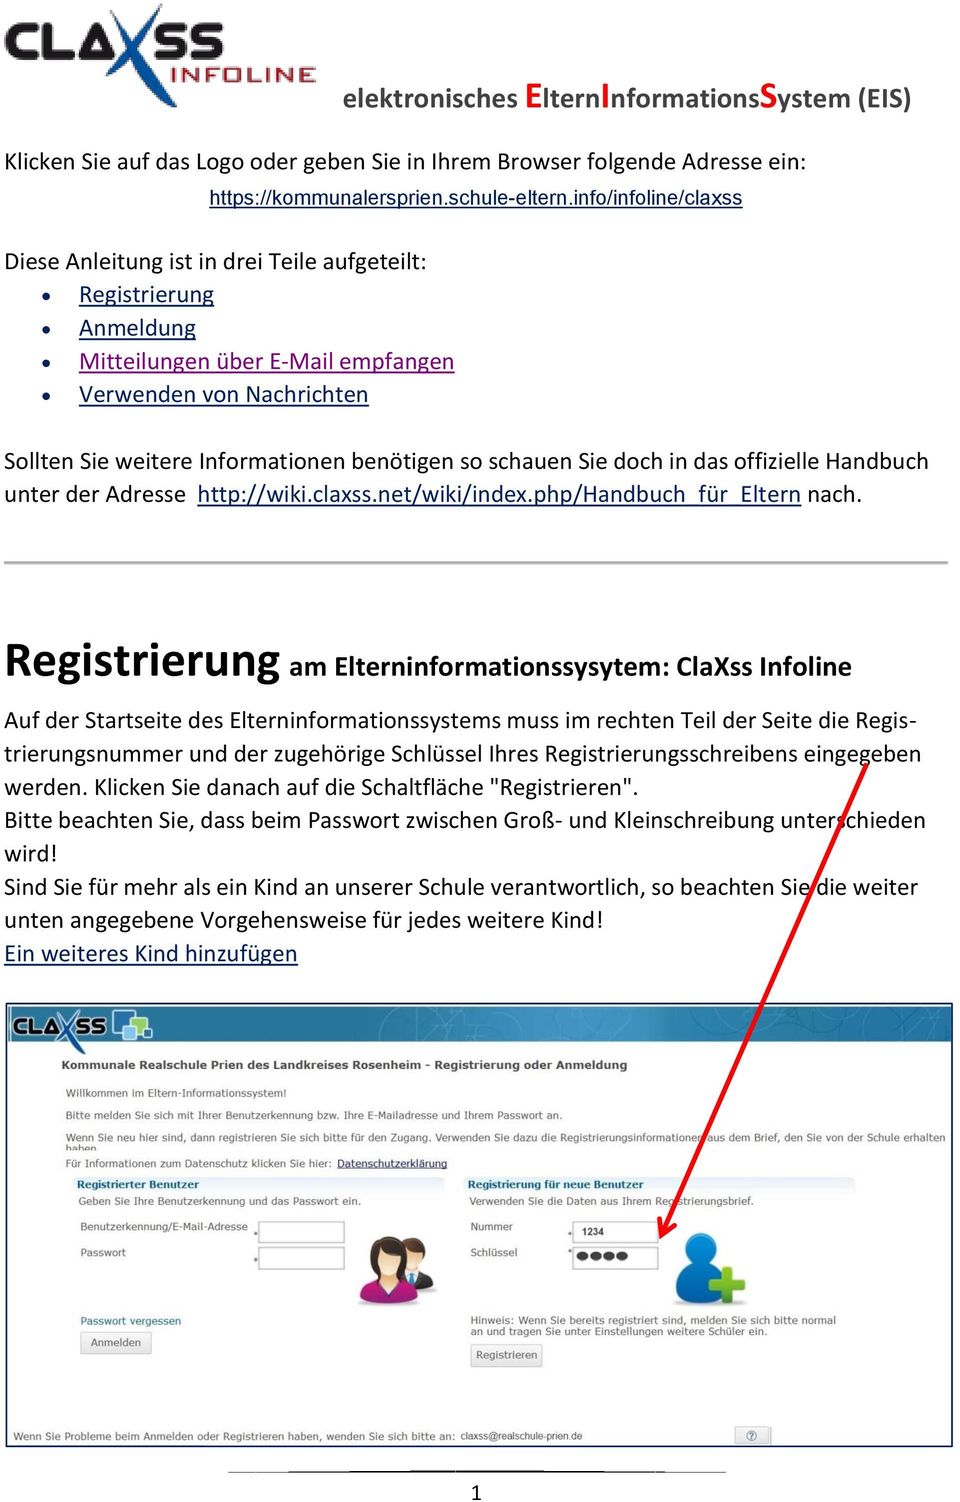 schauen Sie doch in das offizielle Handbuch unter der Adresse http://wiki.claxss.net/wiki/index.php/handbuch_für_eltern nach.